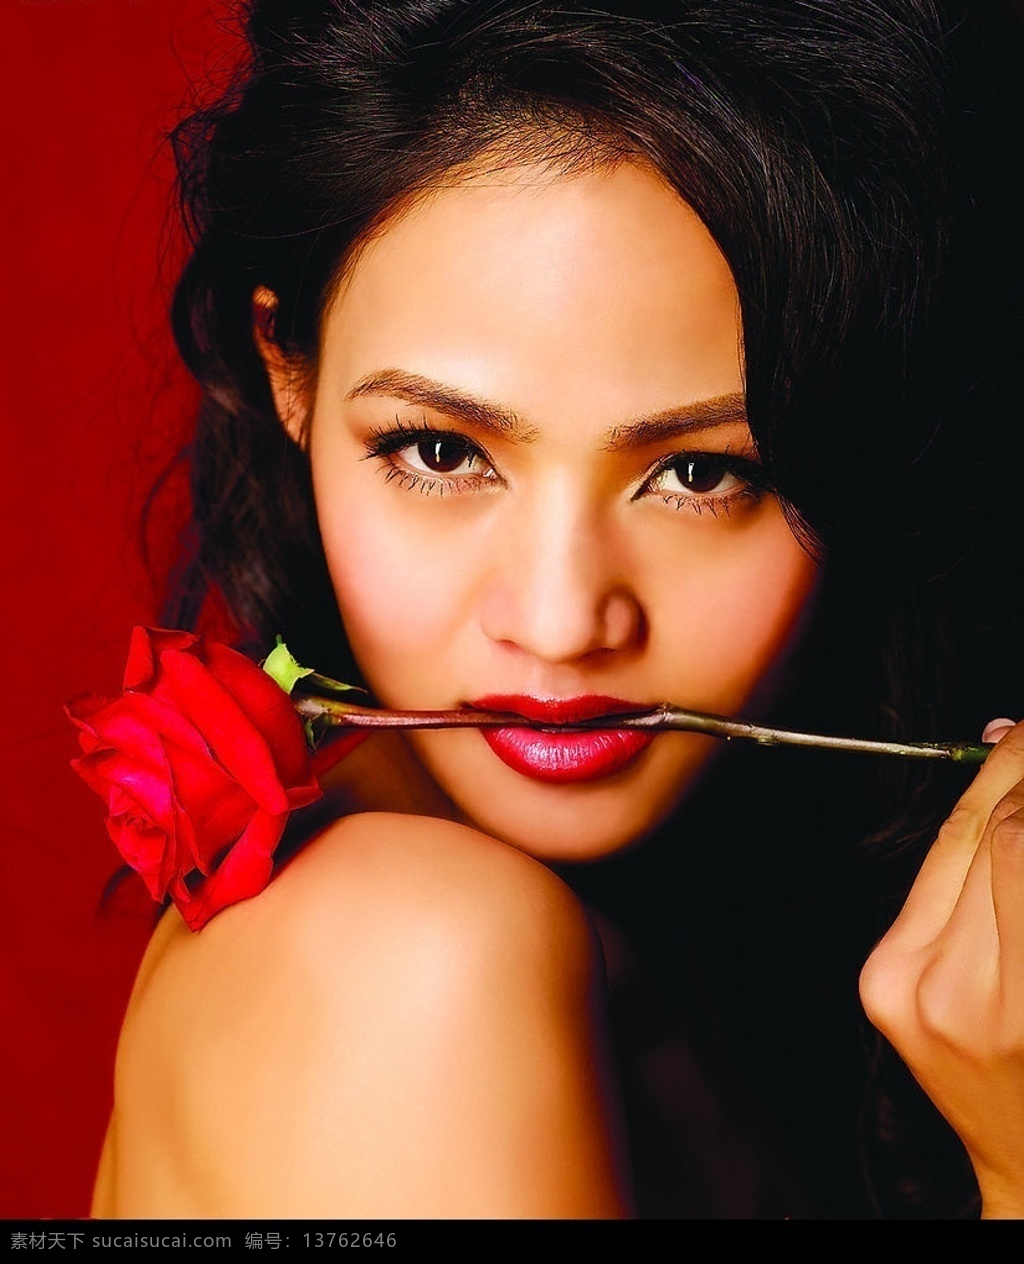 超清晰 美女 红色 玫瑰花 口叼玫瑰花 人物图库 人物摄影 摄影图库